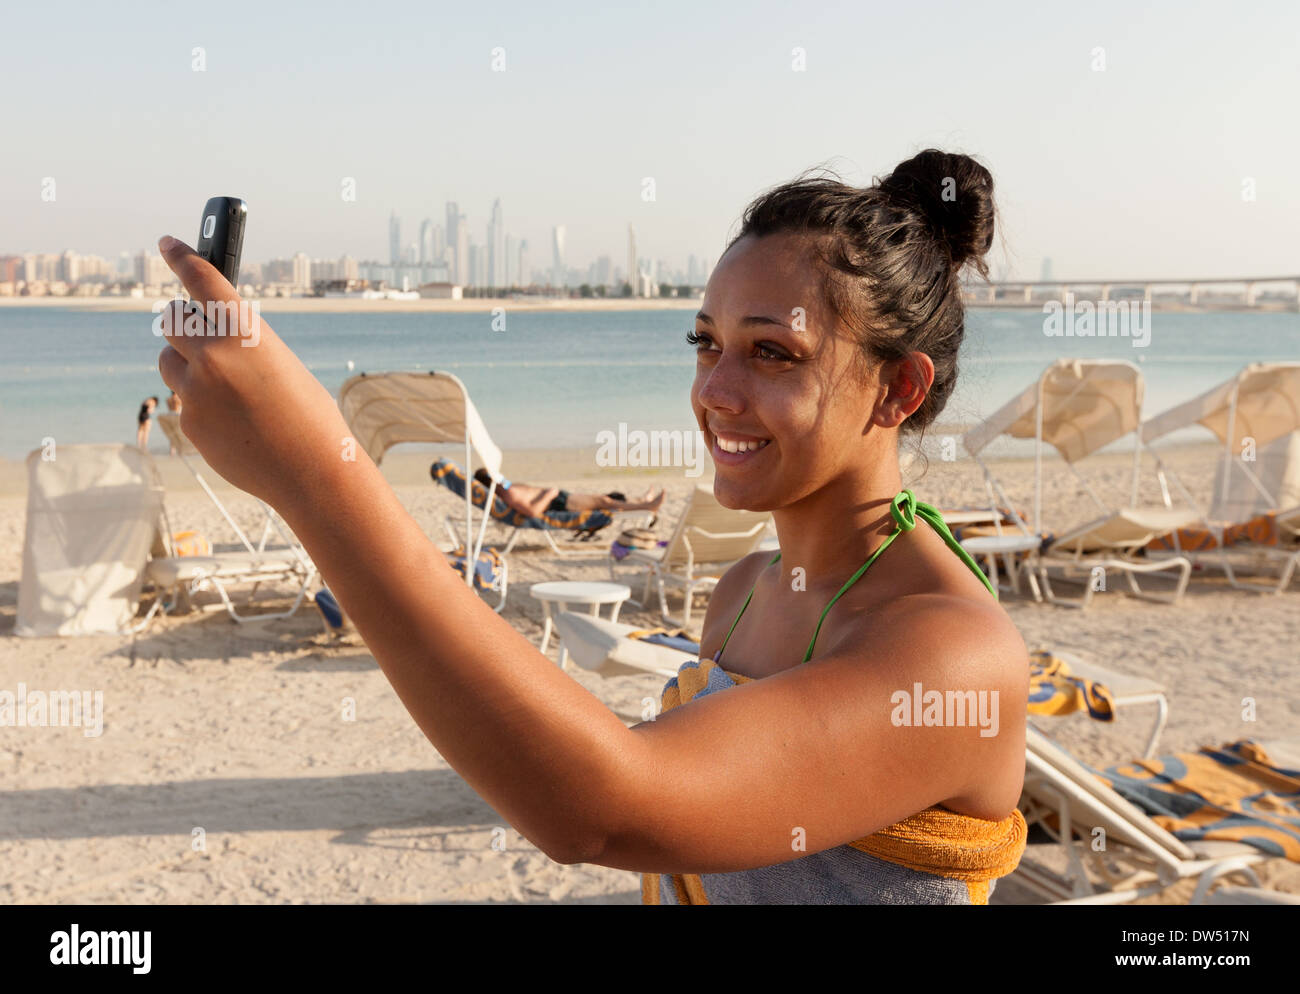 Donna prendendo una foto selfie sulla spiaggia in vacanza, Atlantis Hotel beach, Dubai Emirati Arabi Uniti, Emirati arabi del Medio Oriente Foto Stock